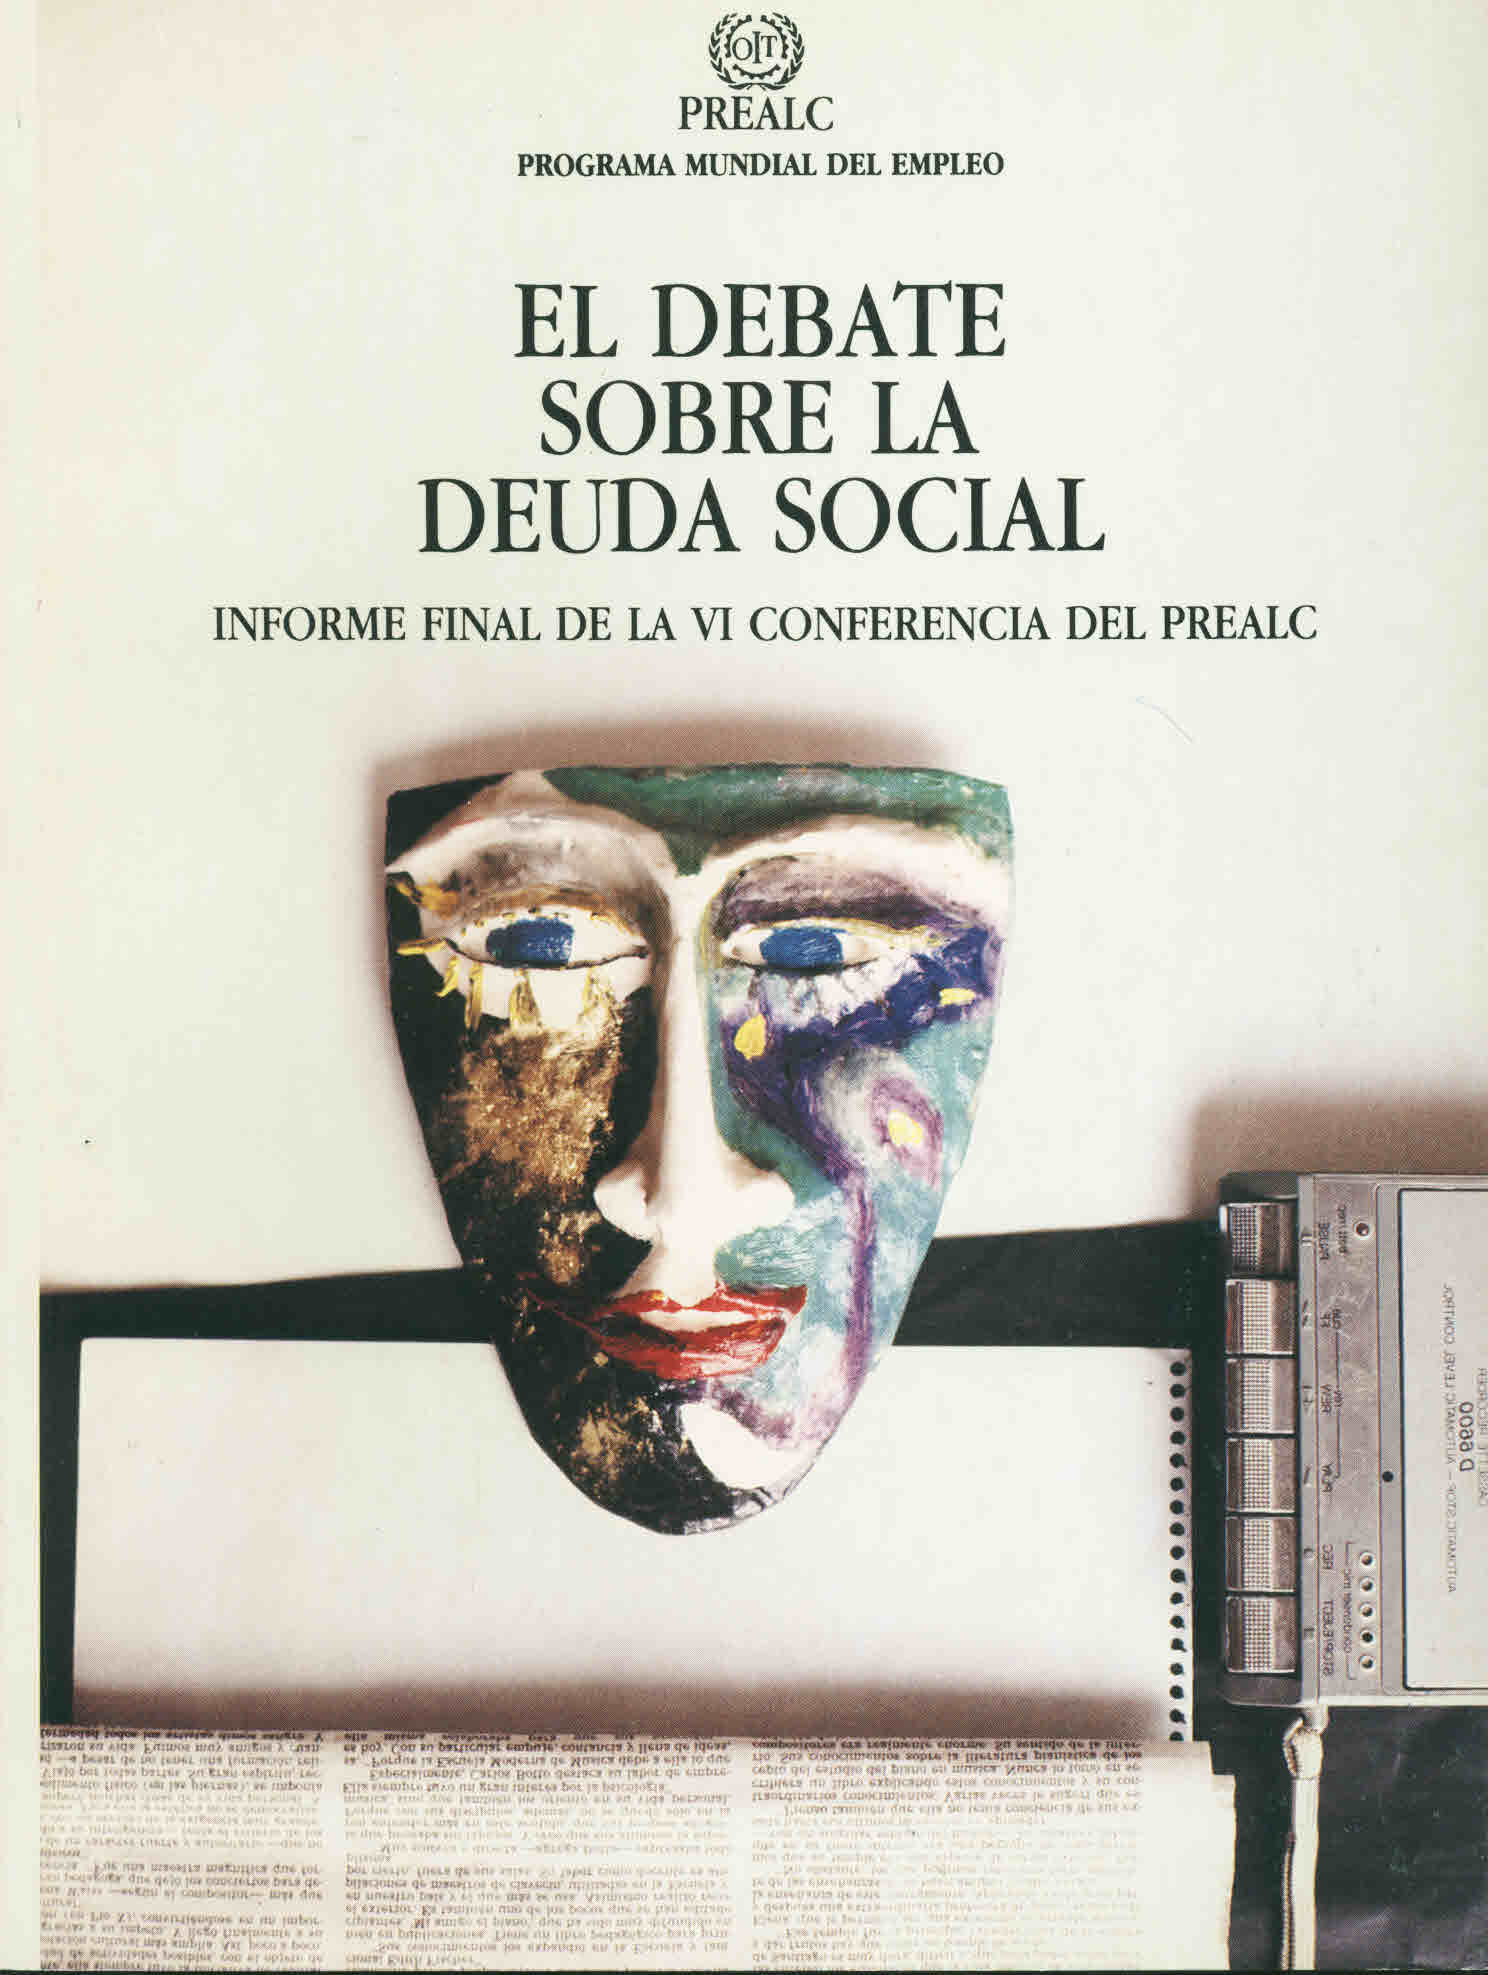 El debate sobre la deuda social. Informe final de la VI conferencia del Prealc